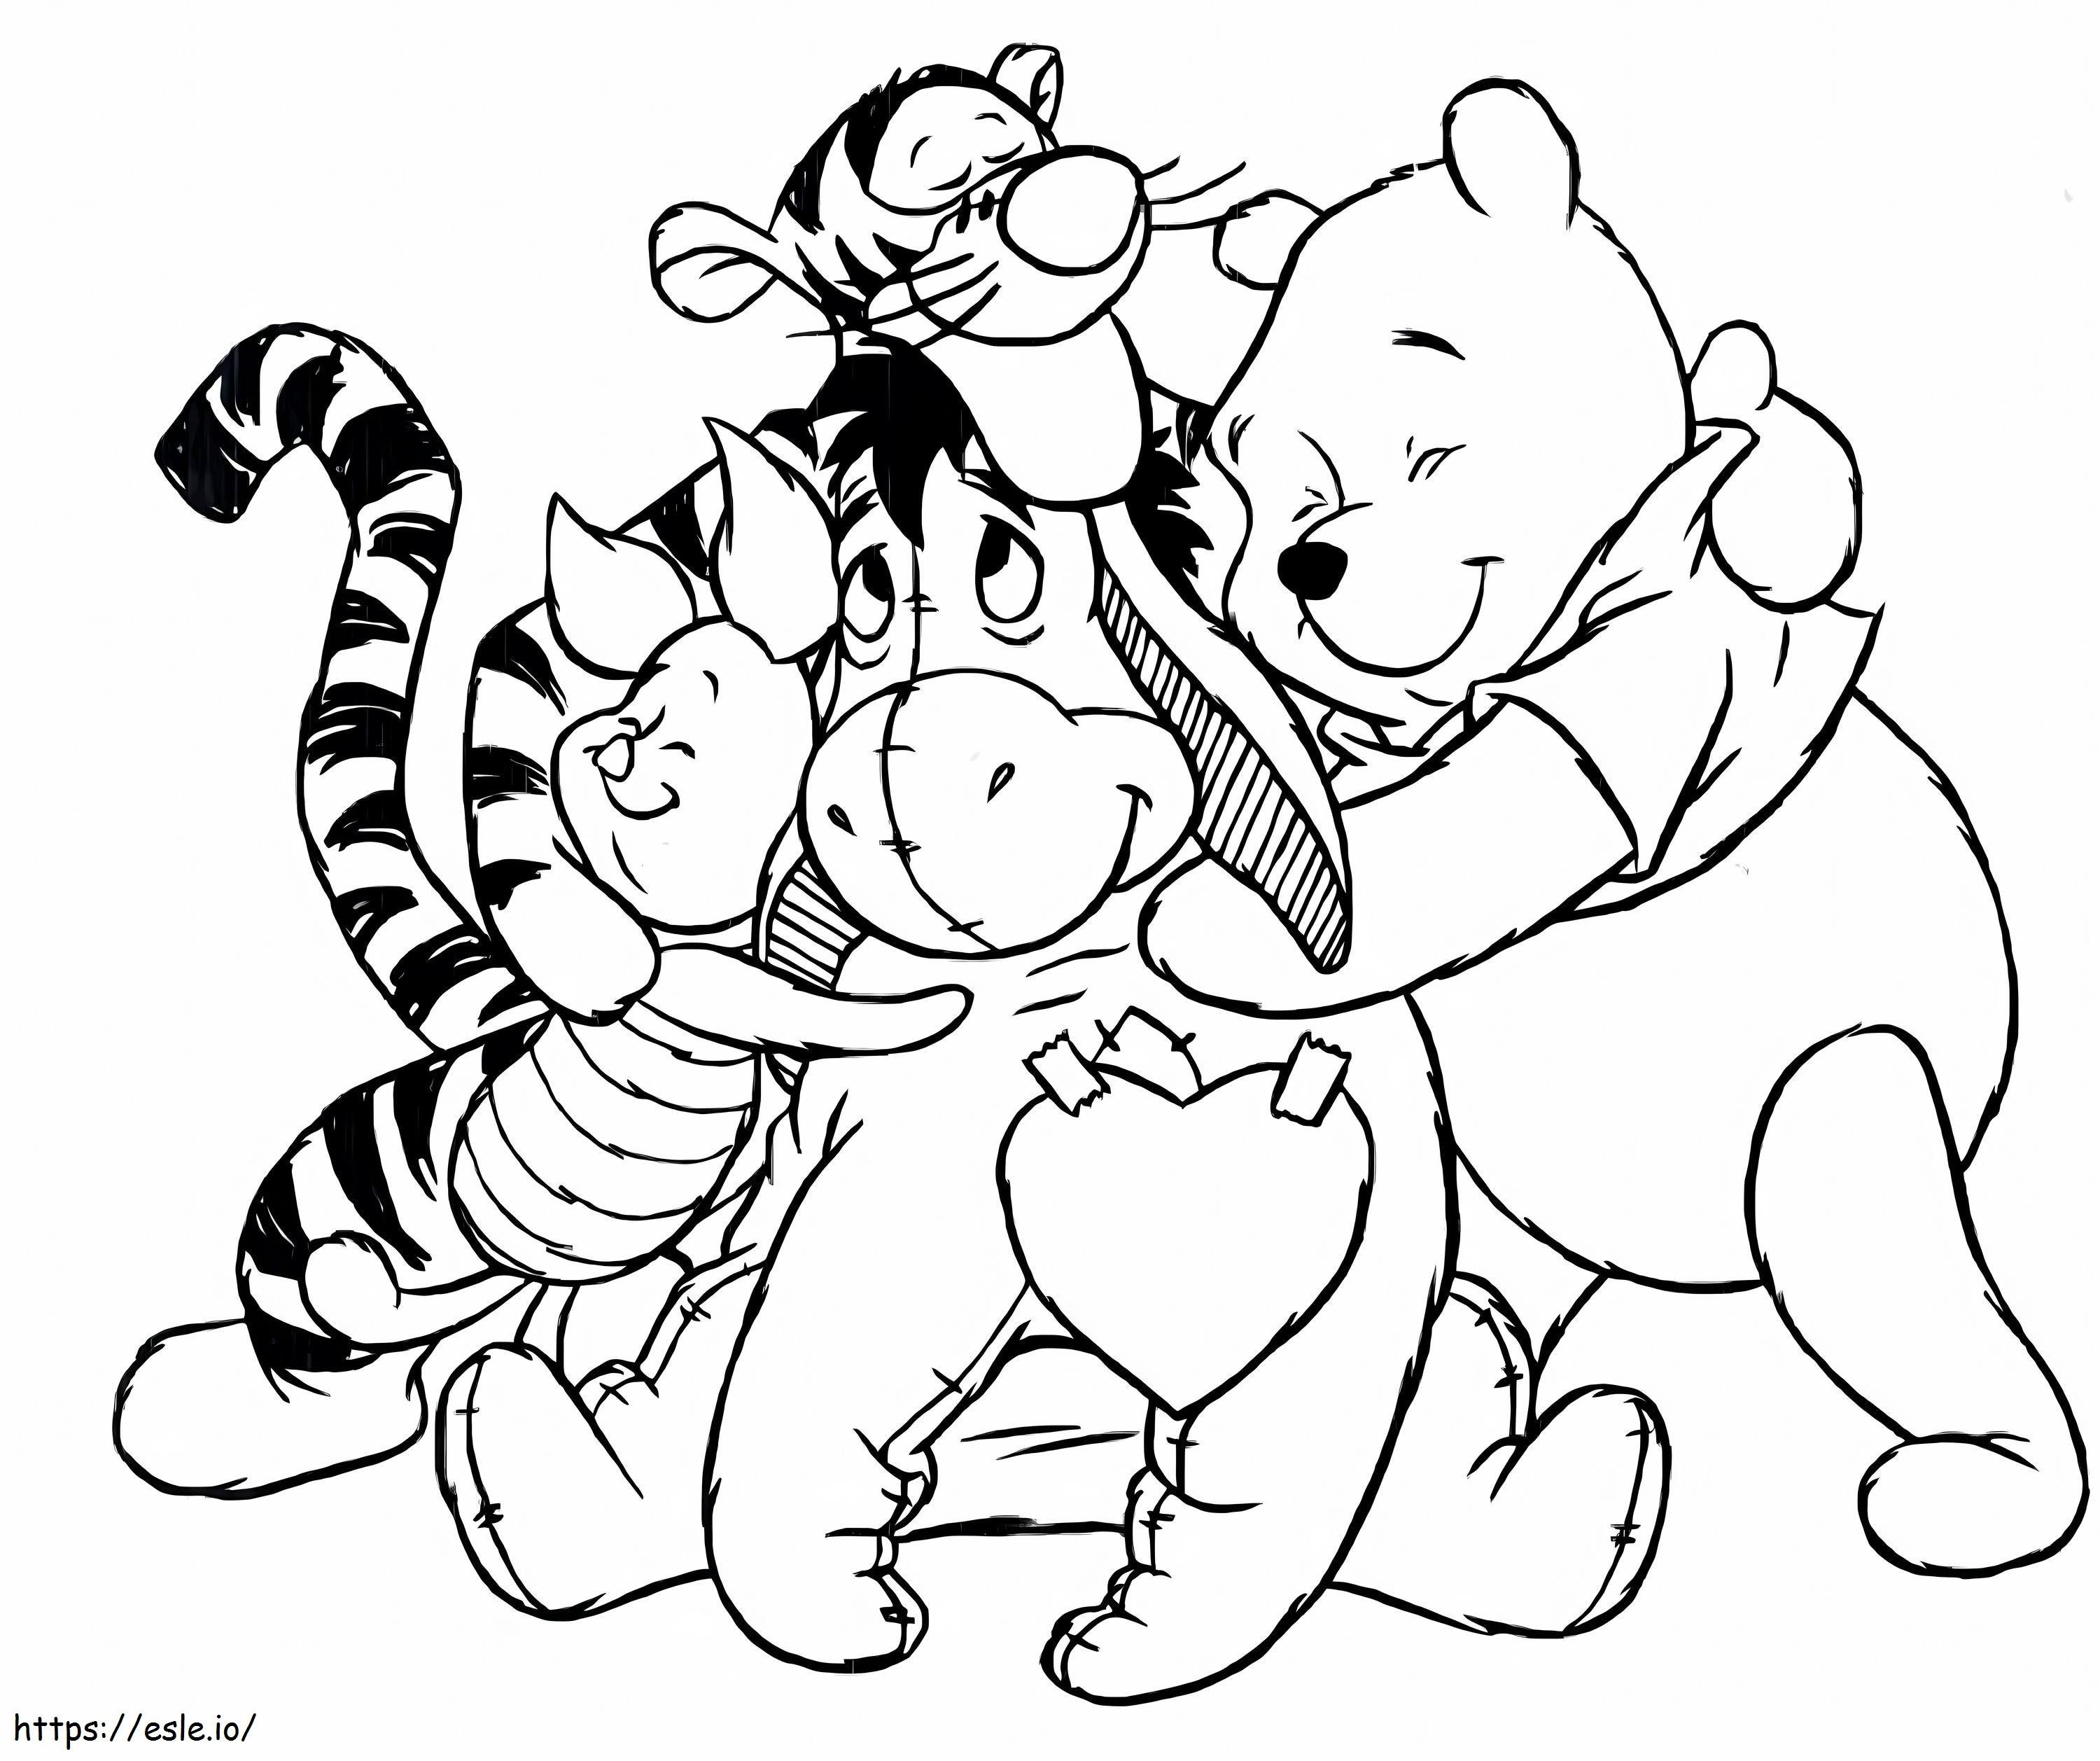 Ursinho Pooh da Disney com amigos para colorir